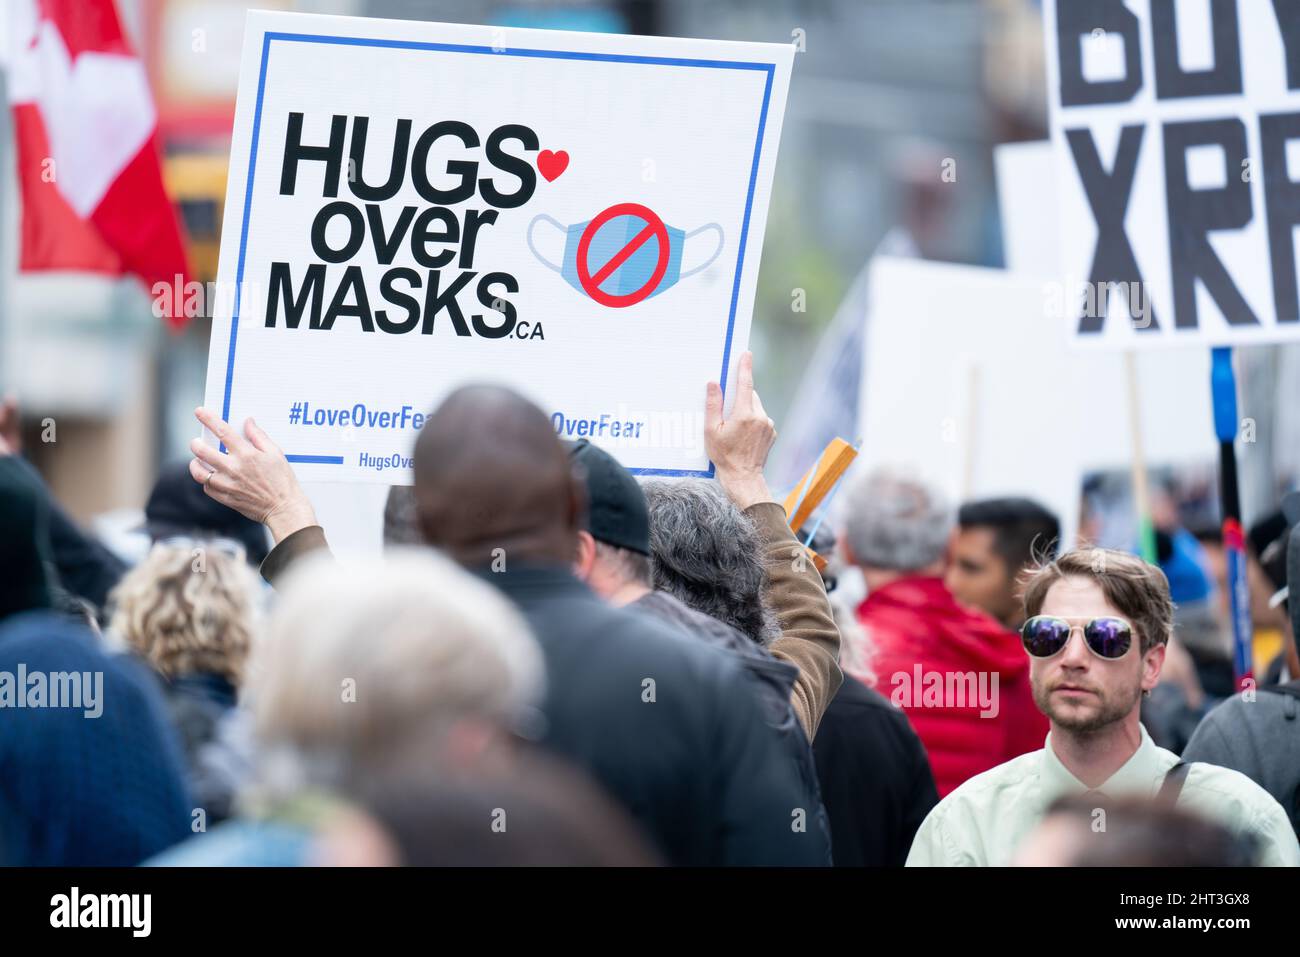 Des hugs au-dessus des masques signent une manifestation anti-masque lors du rassemblement Covid-19 à Toronto, Ontario, Canada Banque D'Images